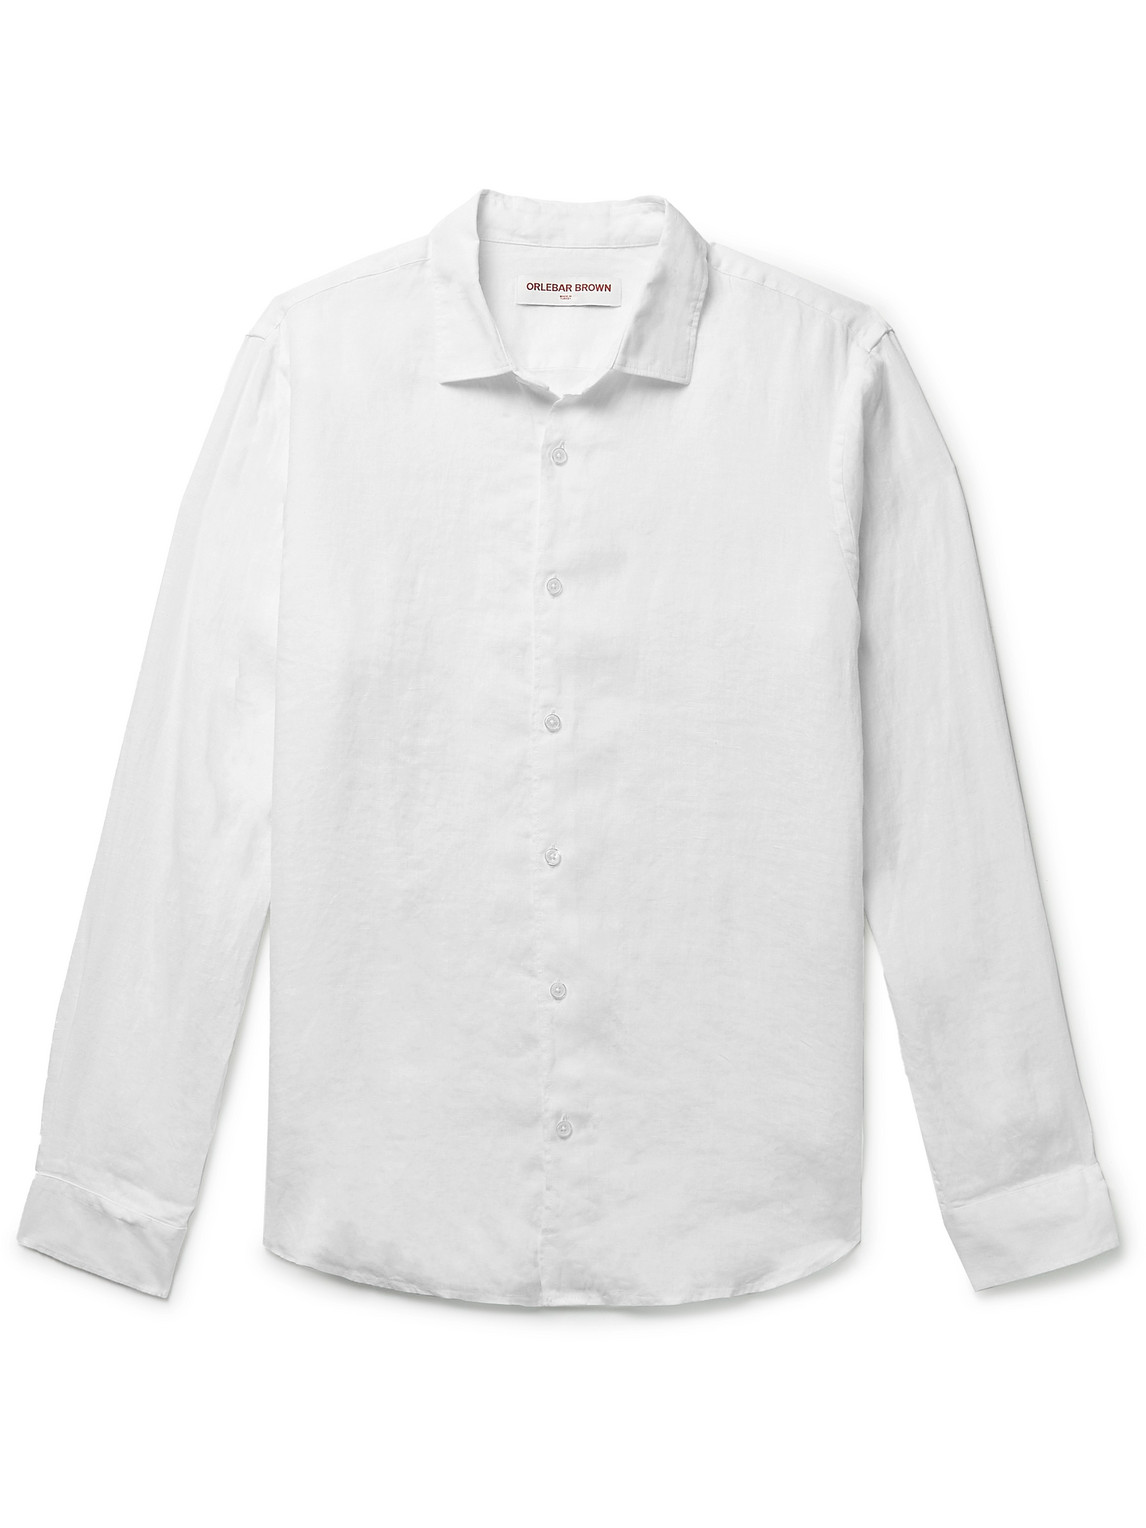 Orlebar Brown - Giles Linen Shirt - Men - White - XS von Orlebar Brown